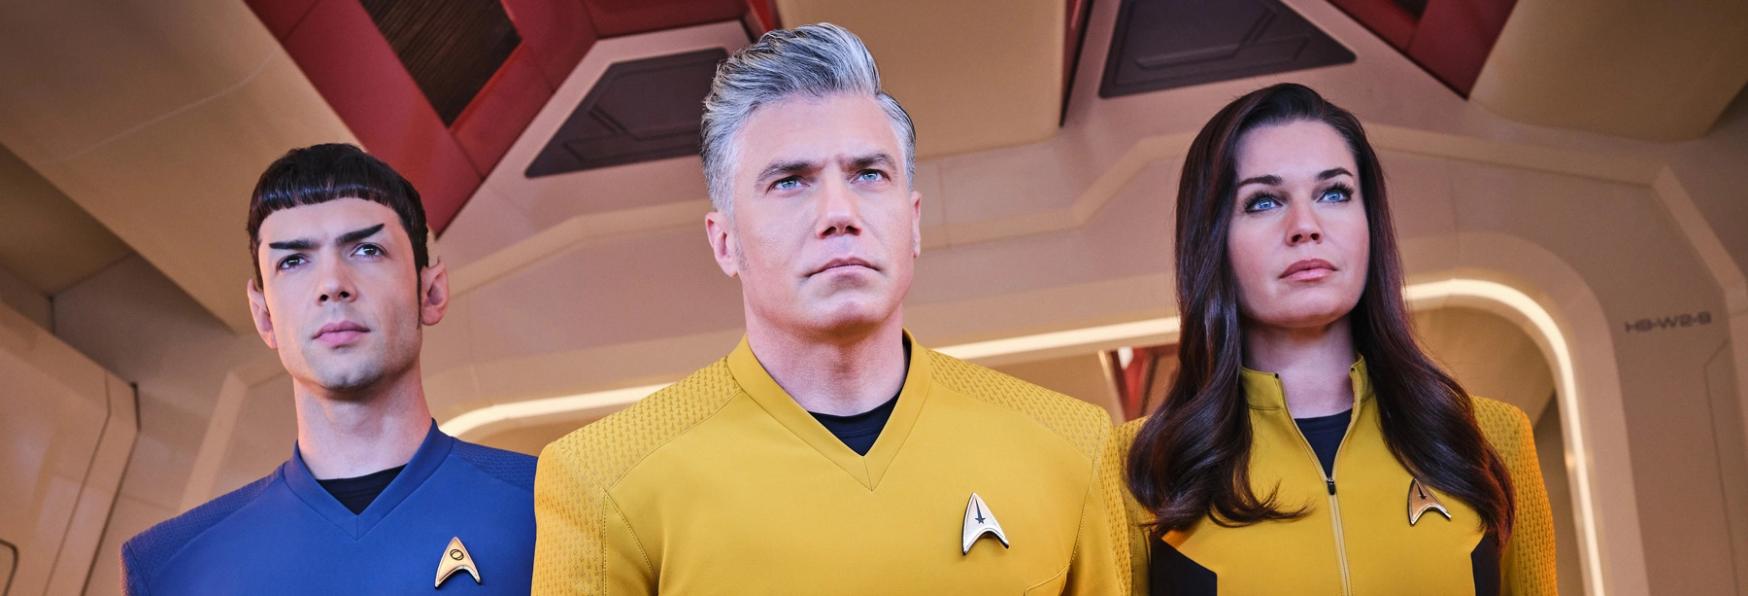 Star Trek: Strange New Worlds 2 - per una Star della Serie TV, la nuova Stagione sarà Migliore della Prima